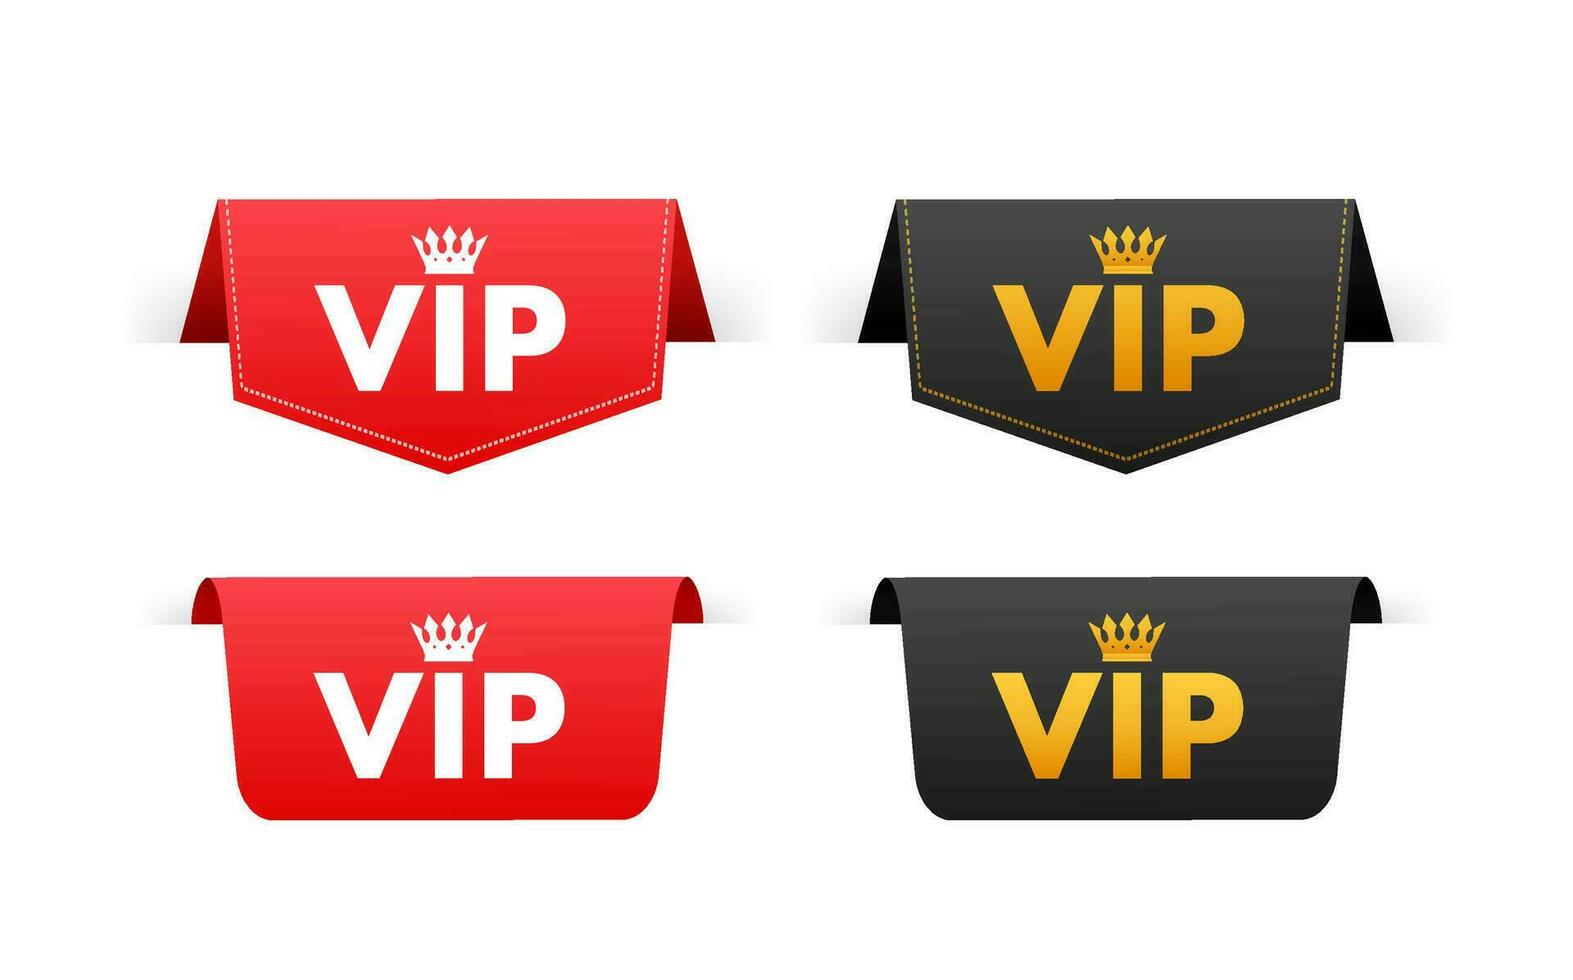 VIP acolchado, insignias o etiquetas muy importante persona. lujo logo. vector valores ilustración.